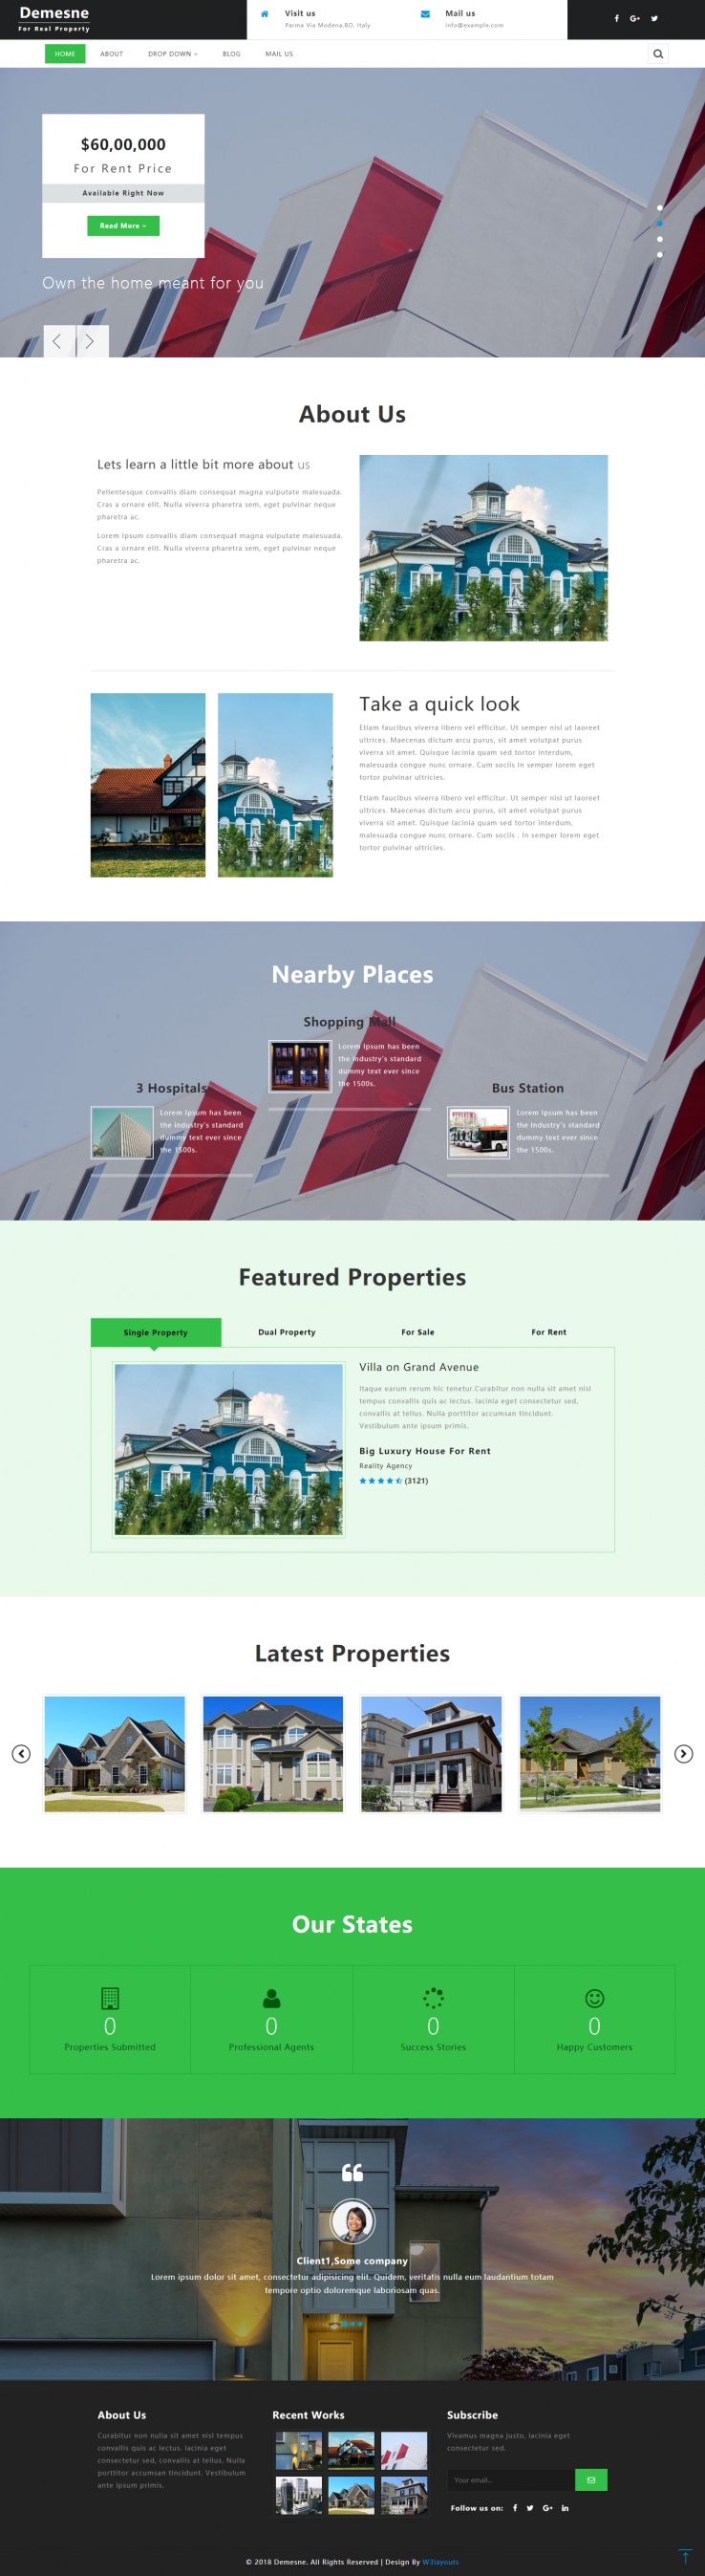 绿色简洁风格的房产交易中心整站网站源码下载